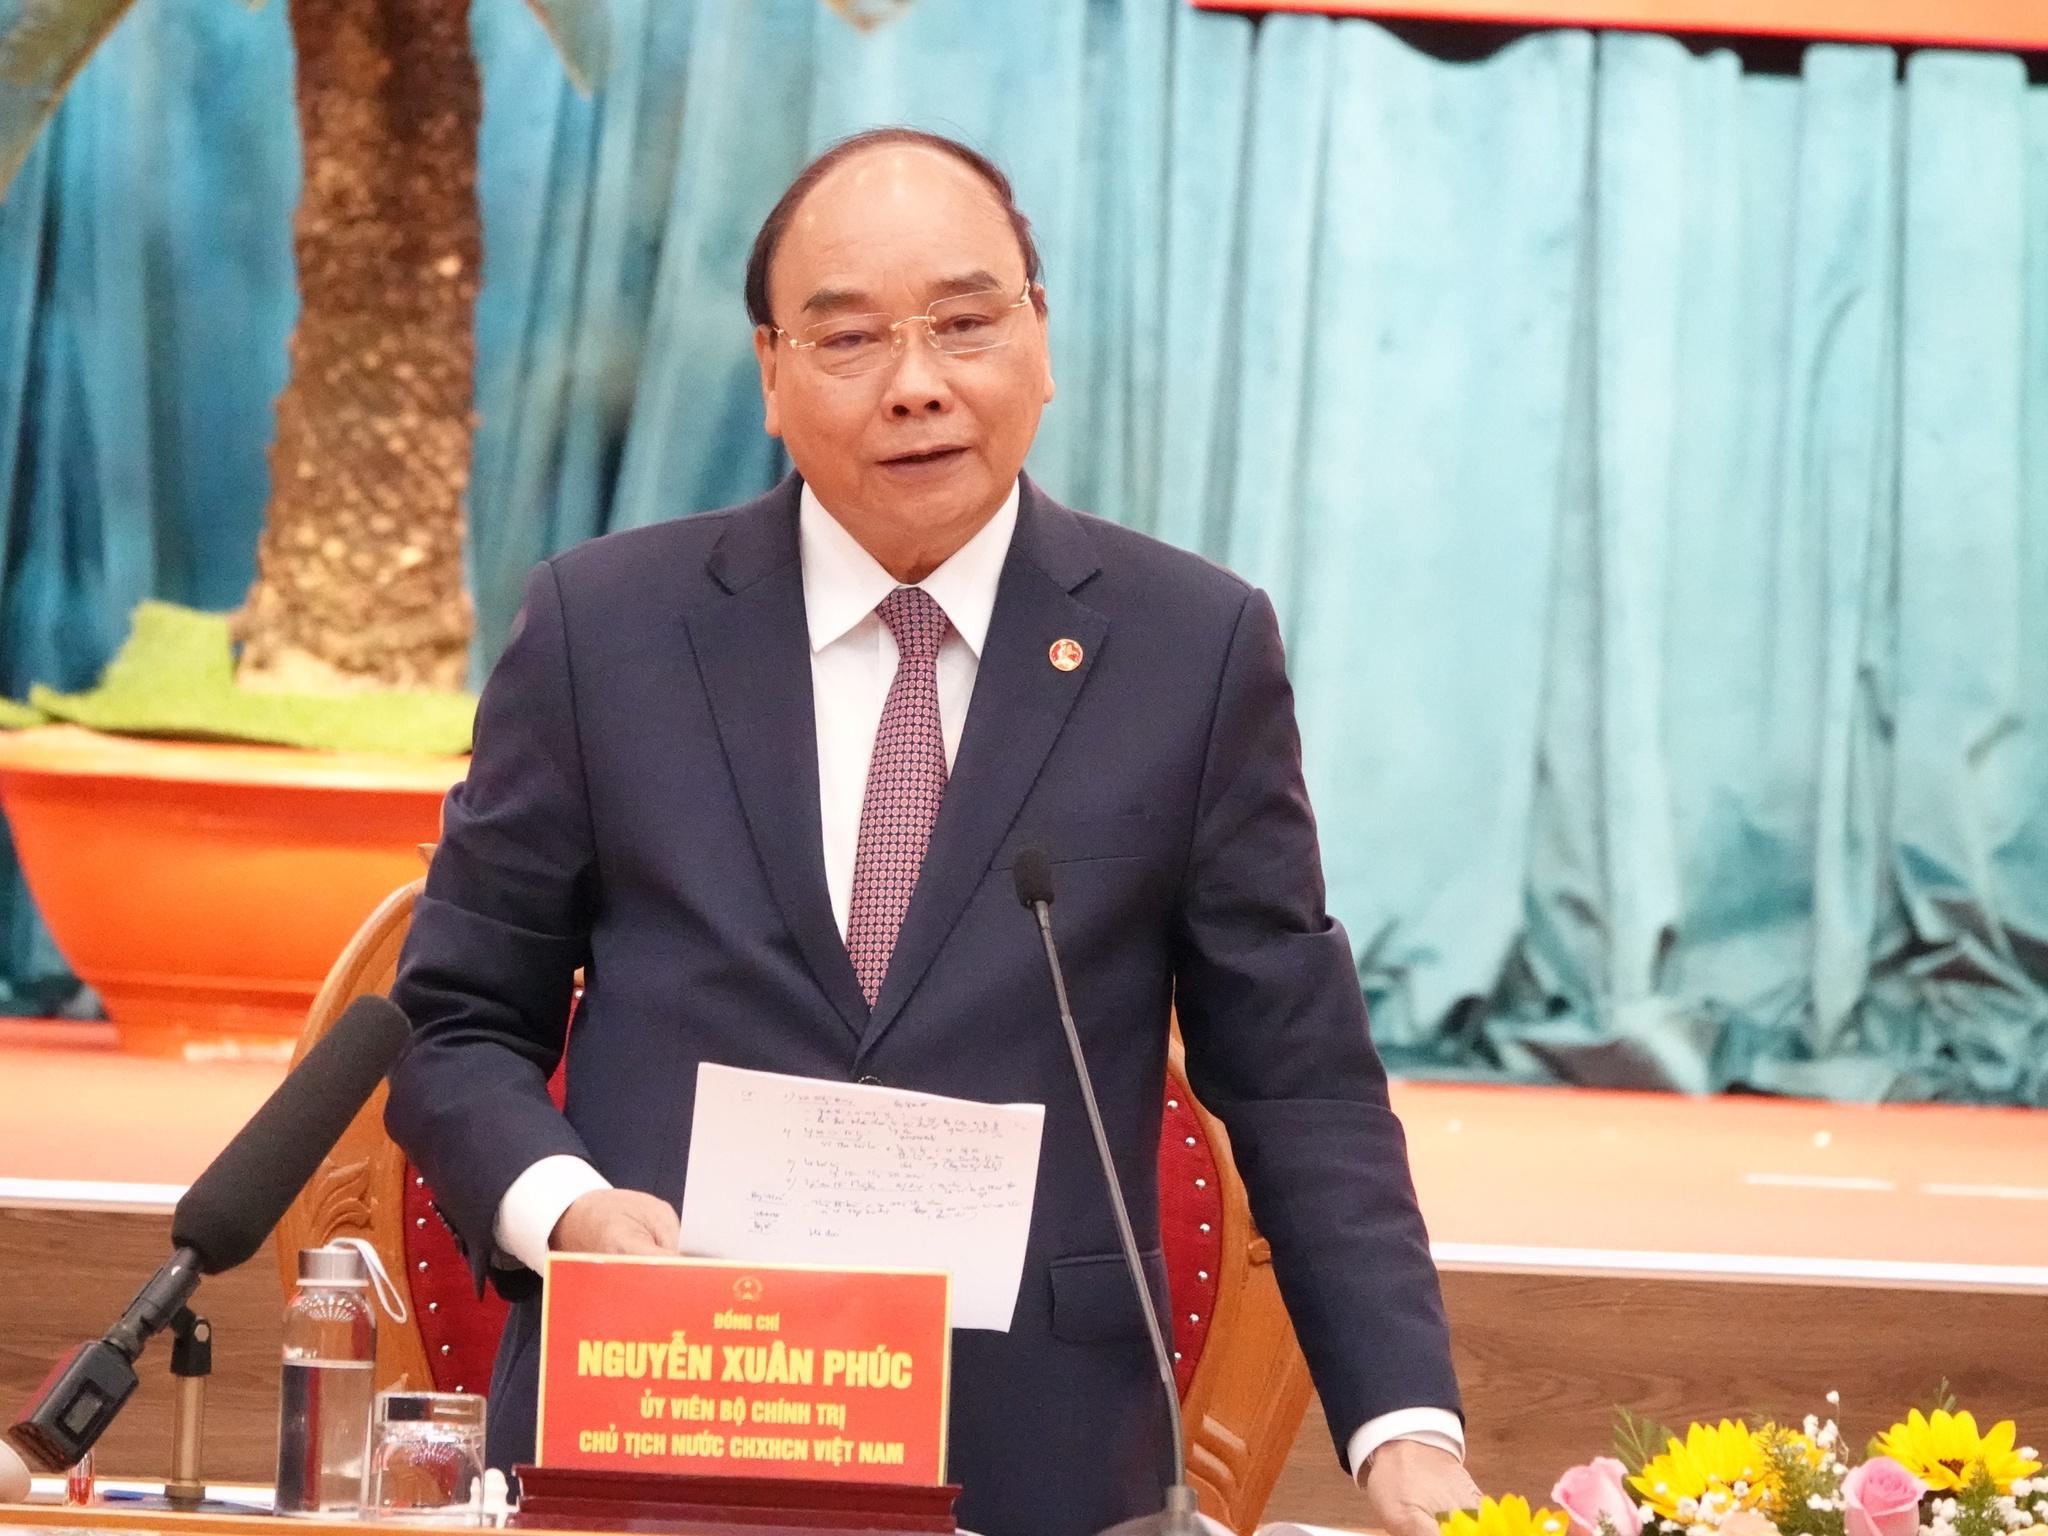 Chủ tịch nước Nguyễn Xuân Phúc: Tỉnh Bình Định cần mục tiêu phát triển bền vững - ảnh 4